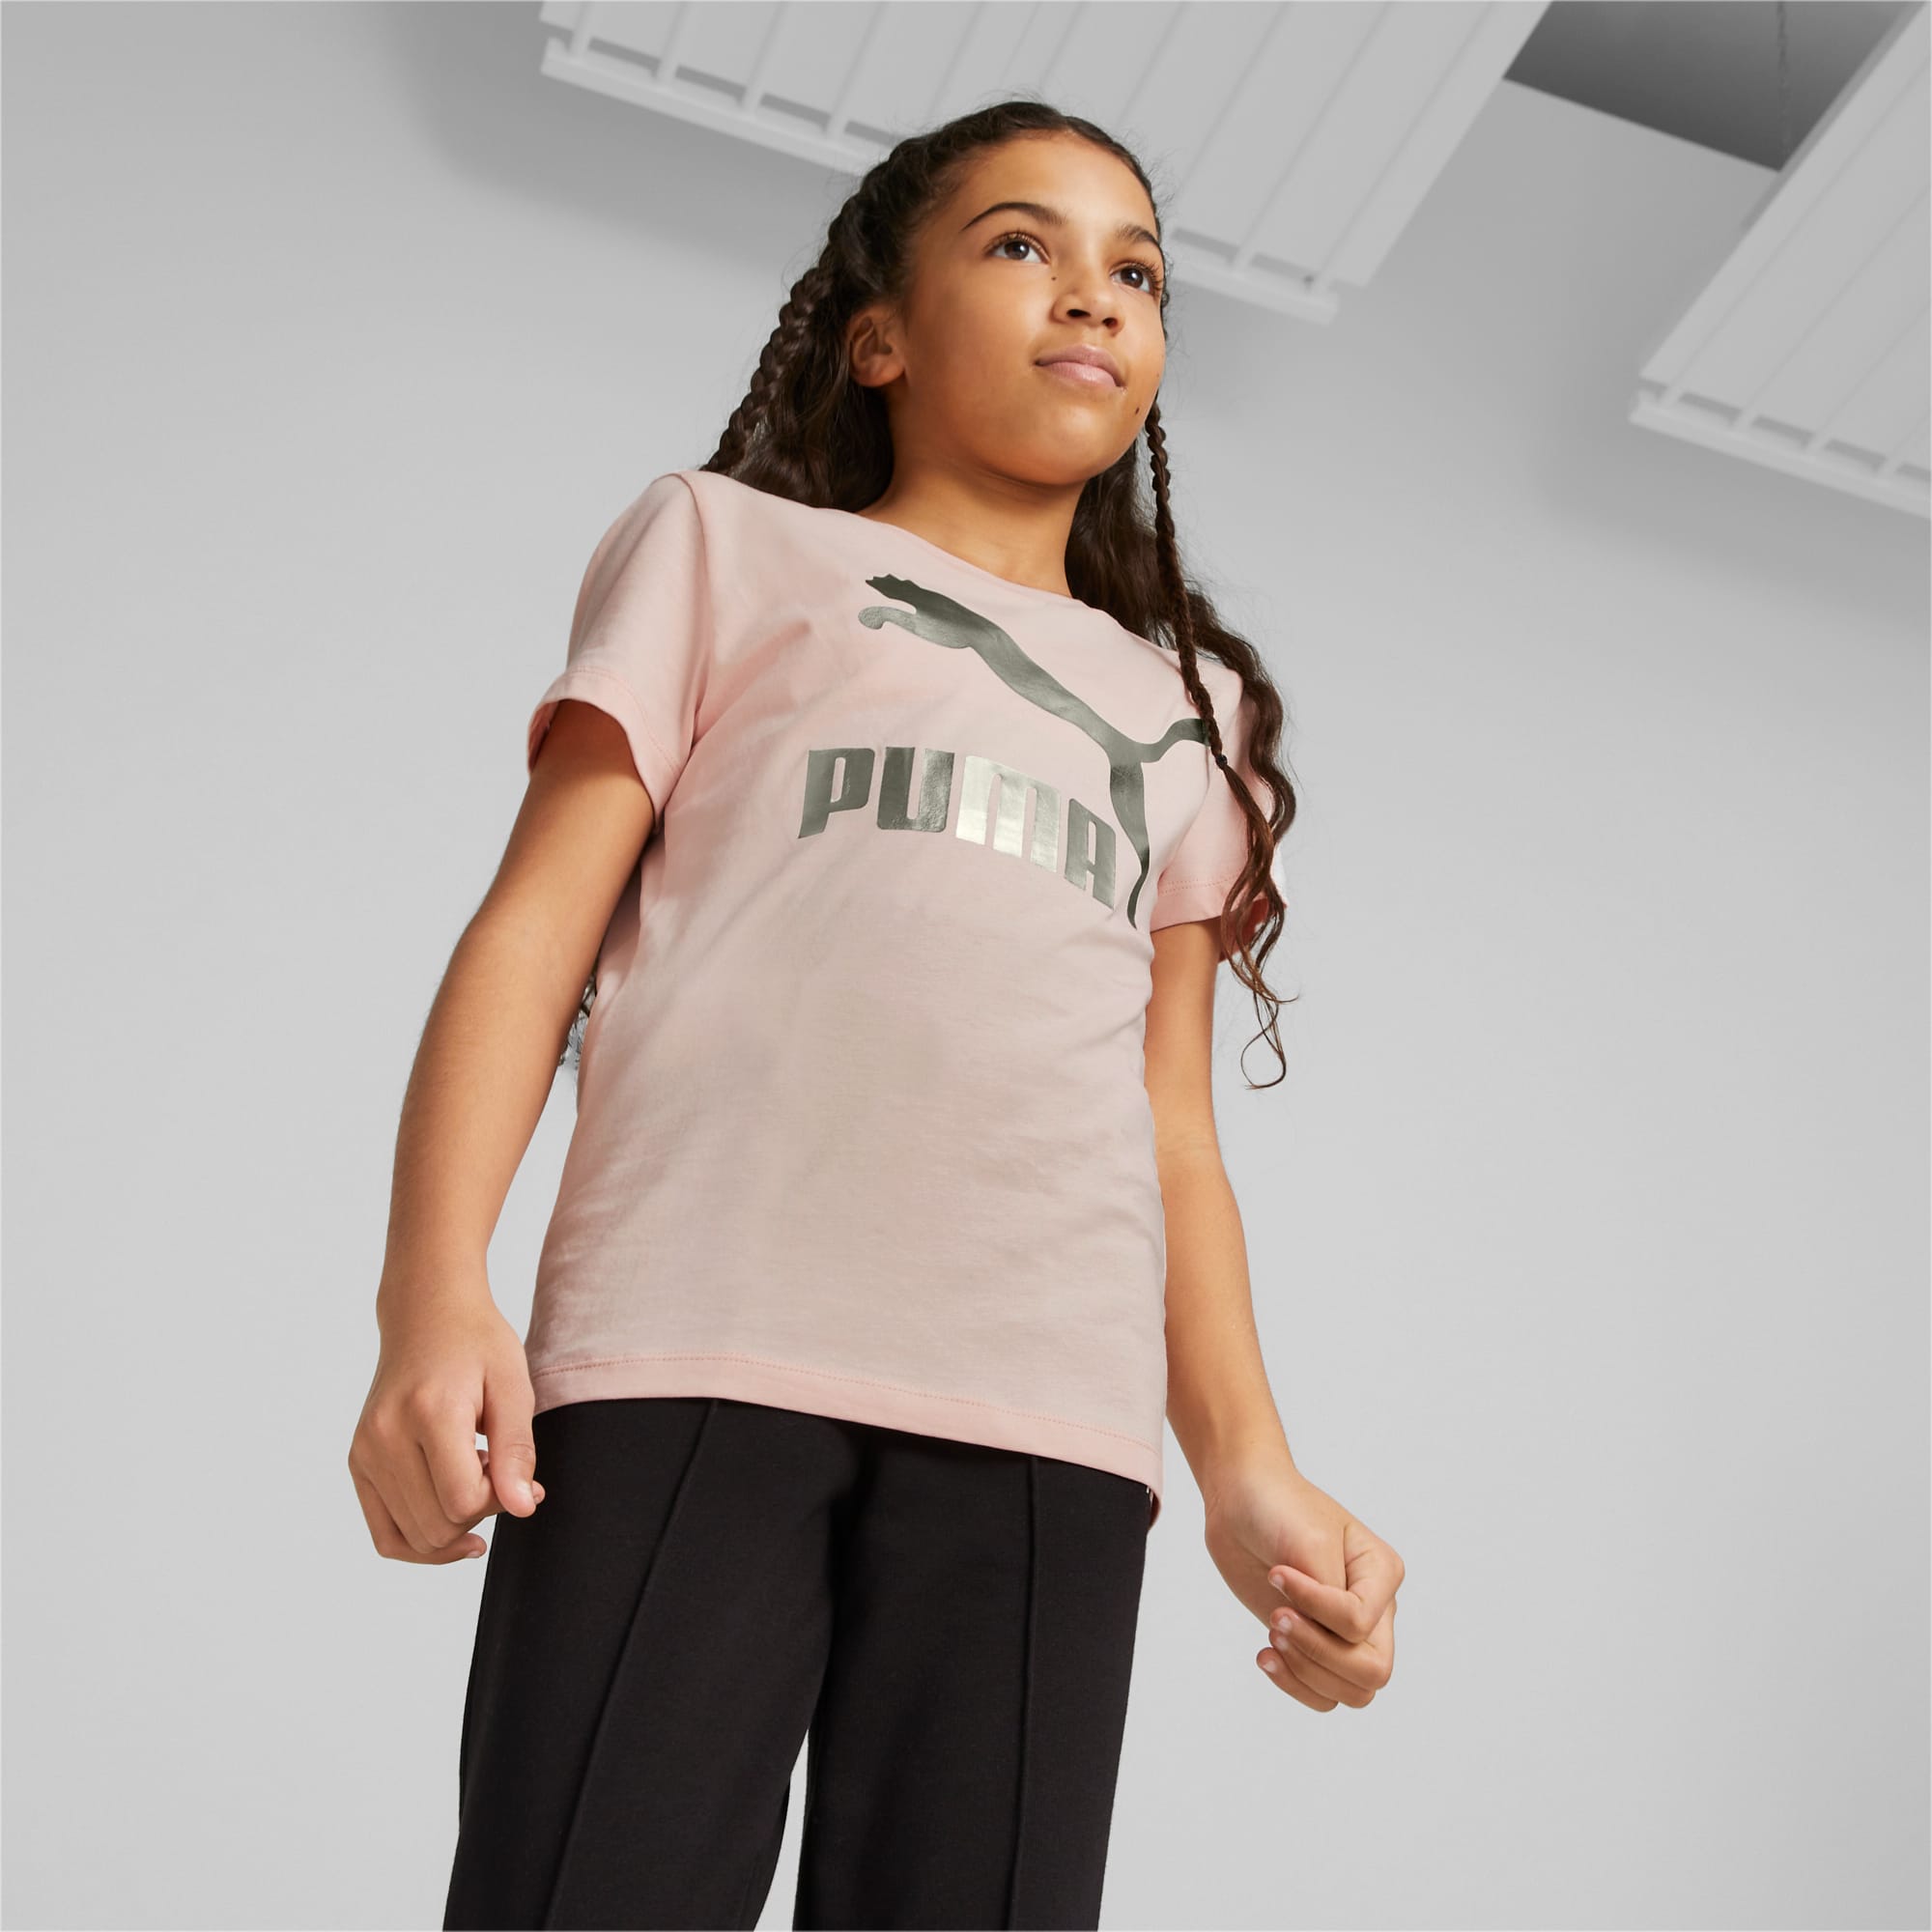 PUMA Classics Logo Youth T-Shirt, Rose Dust